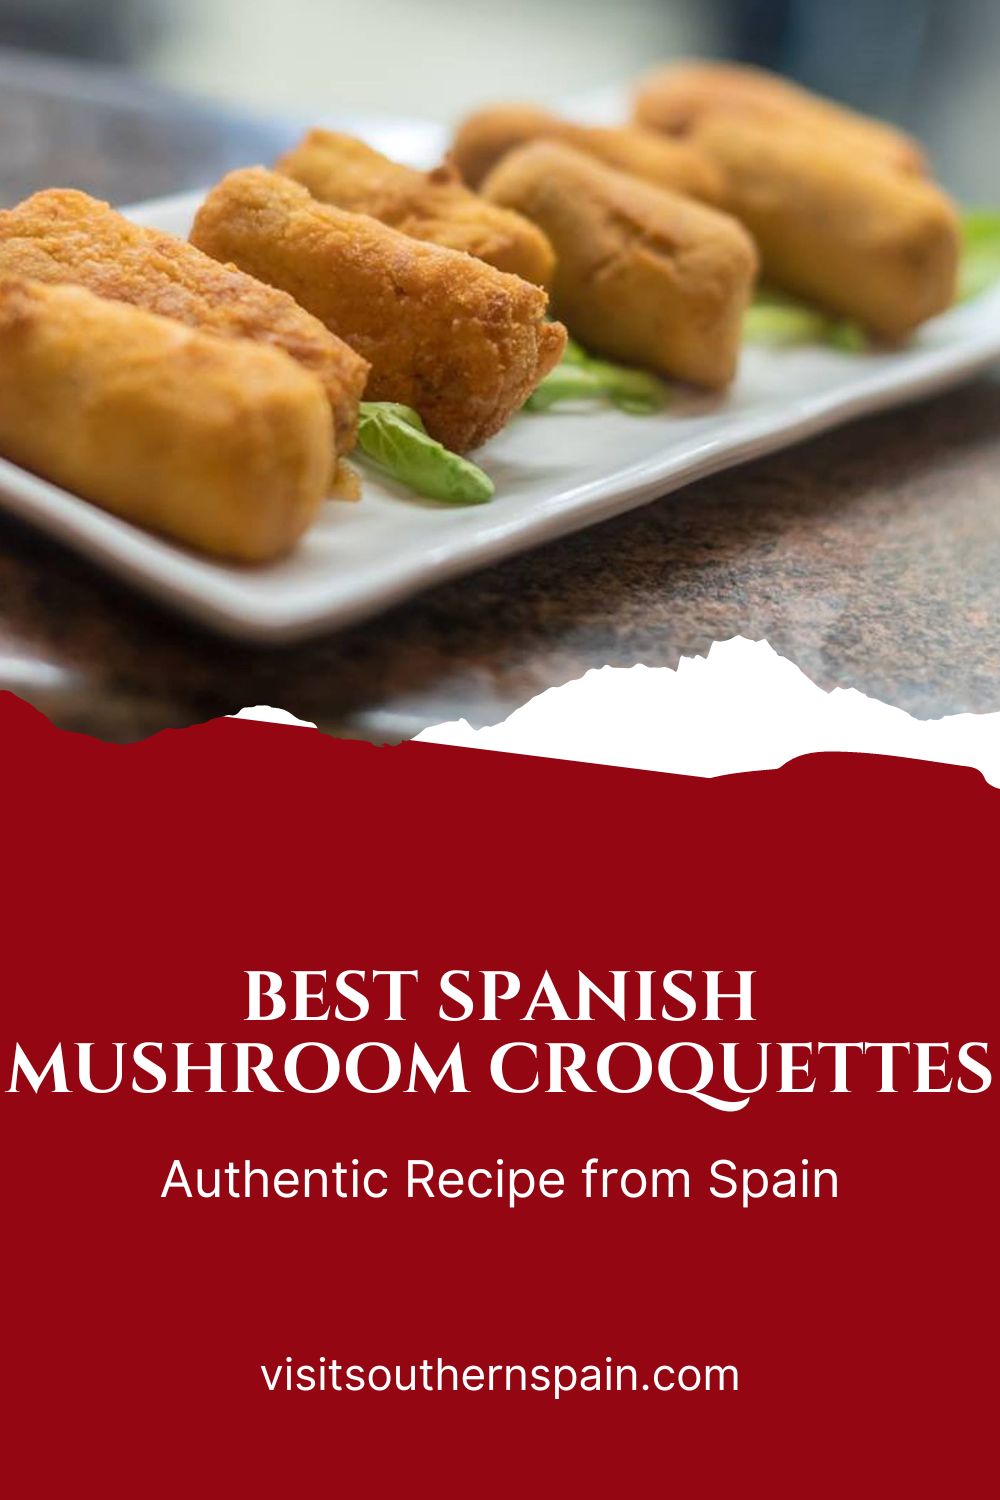 5 - Best Spanish Mushroom Croquettes Recipe